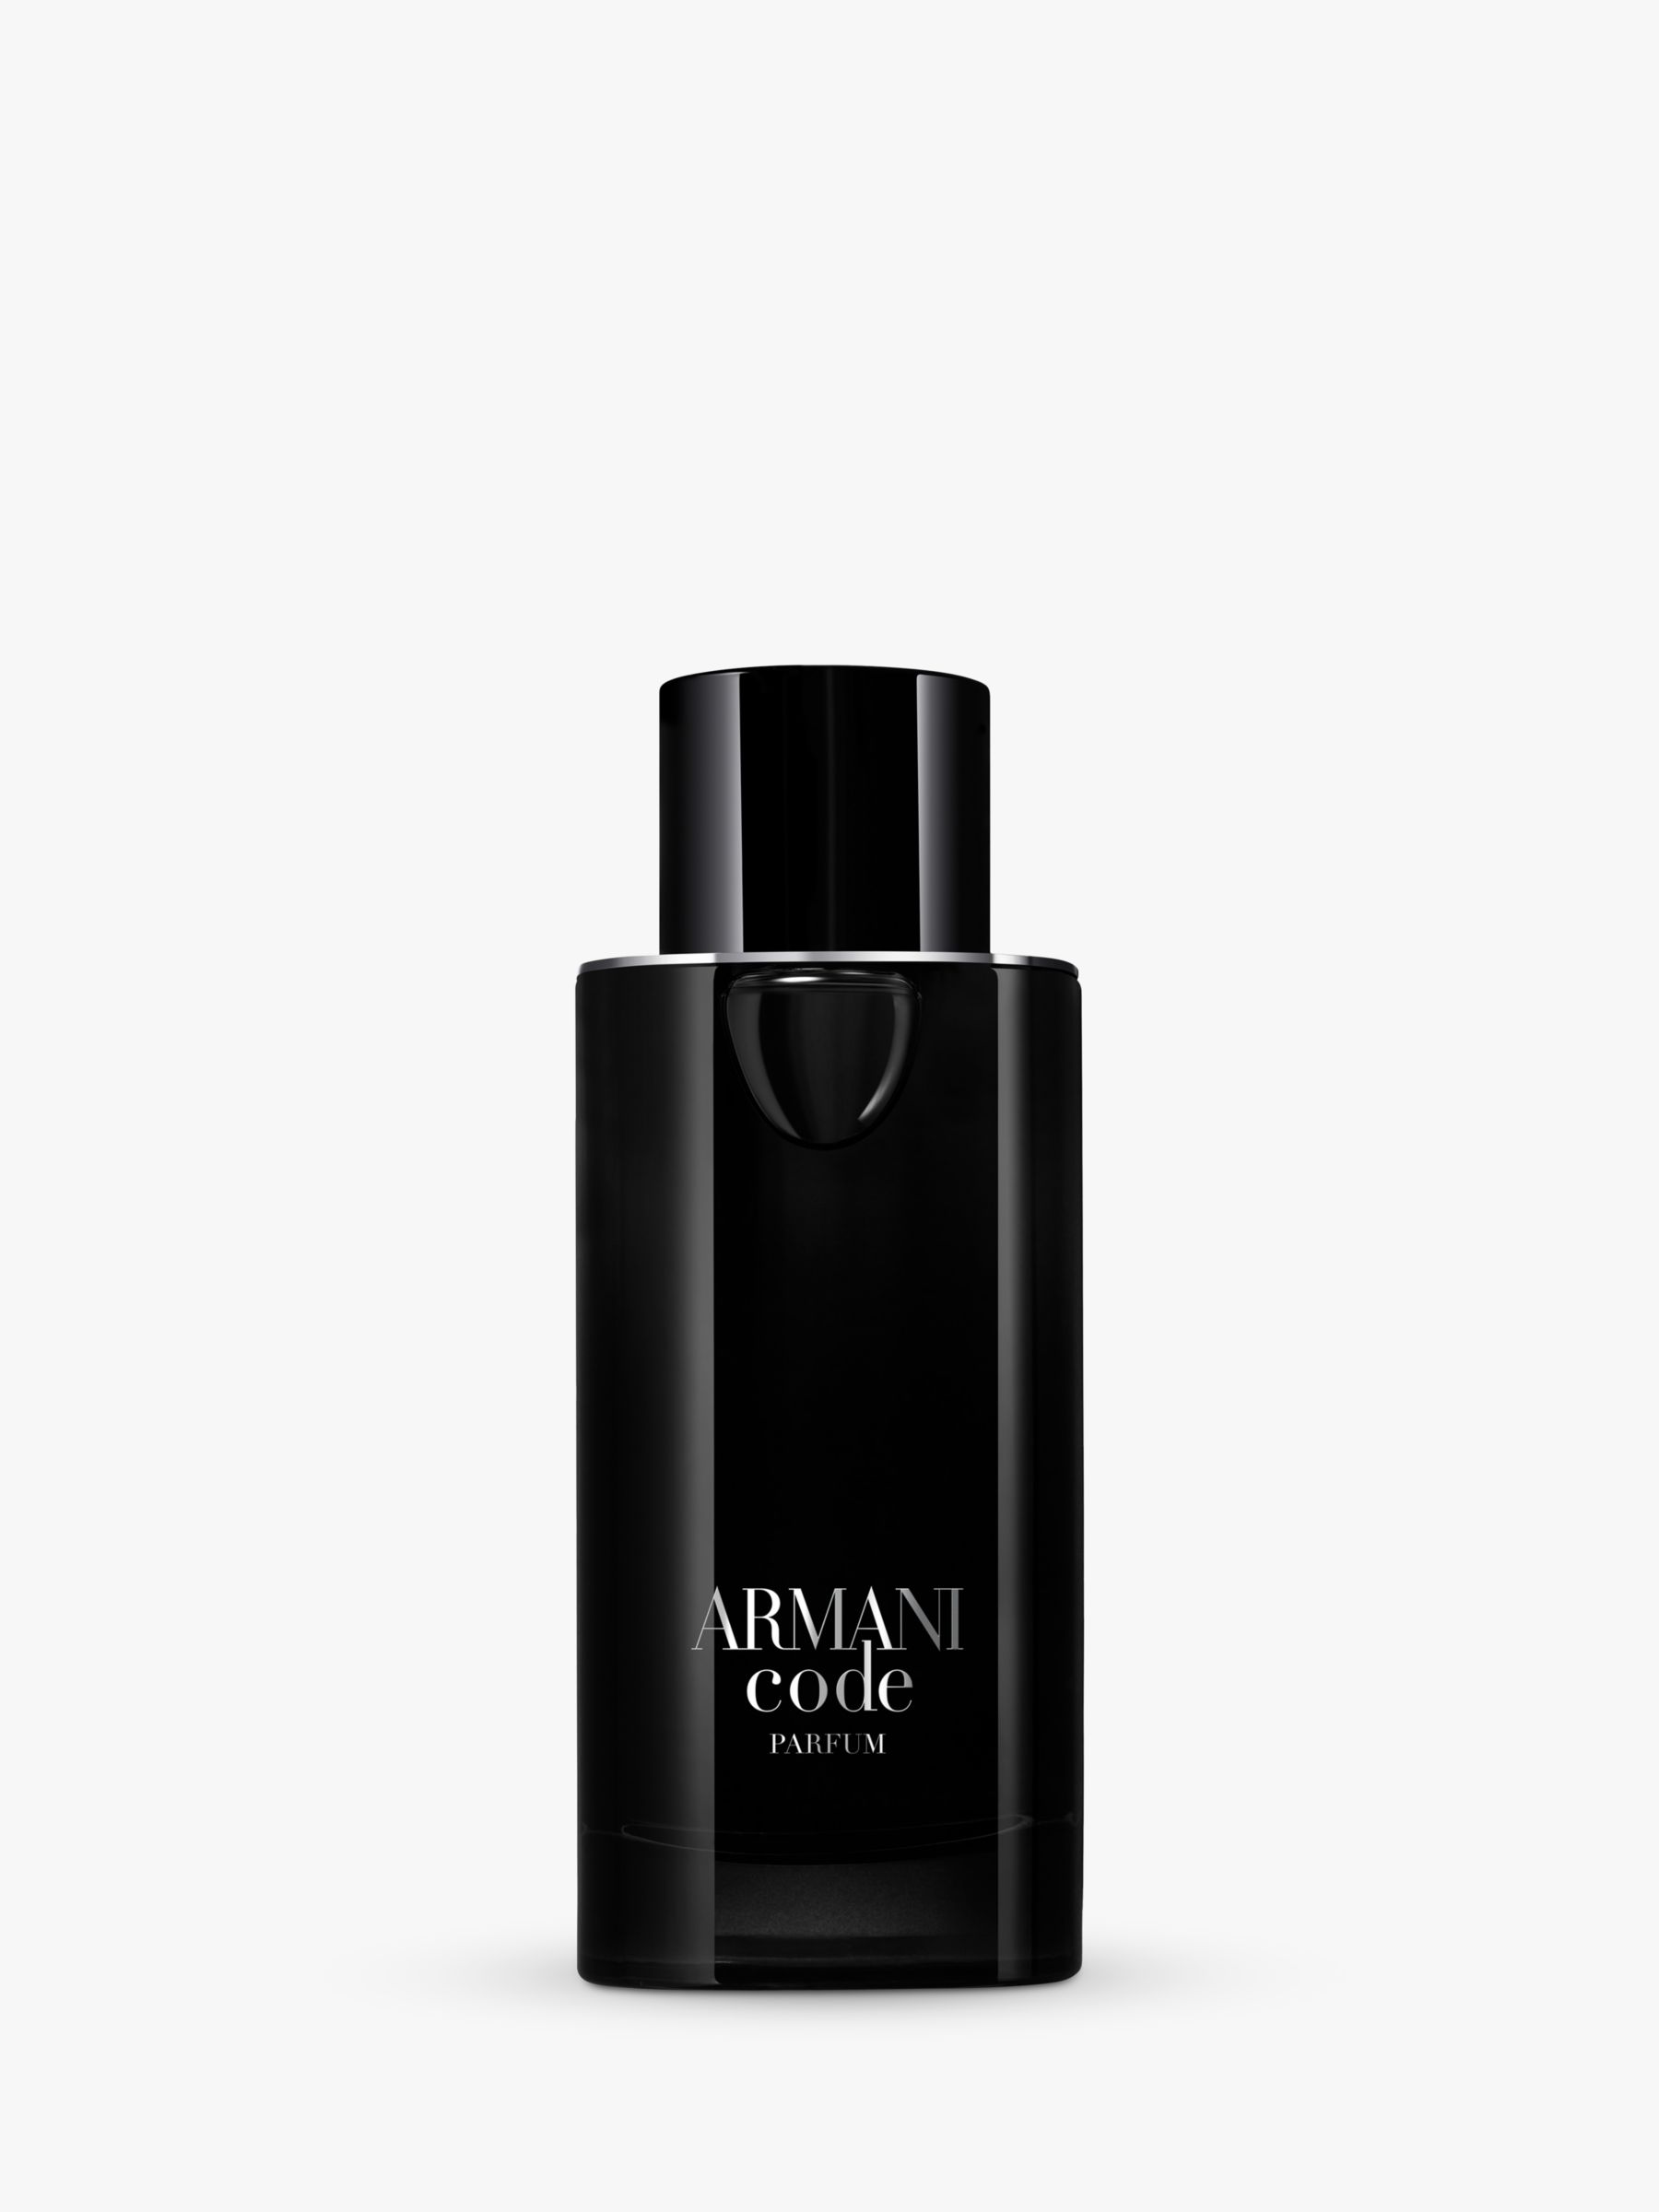 Armani Code Perfume By Giorgio Armani For Women, 44% OFF